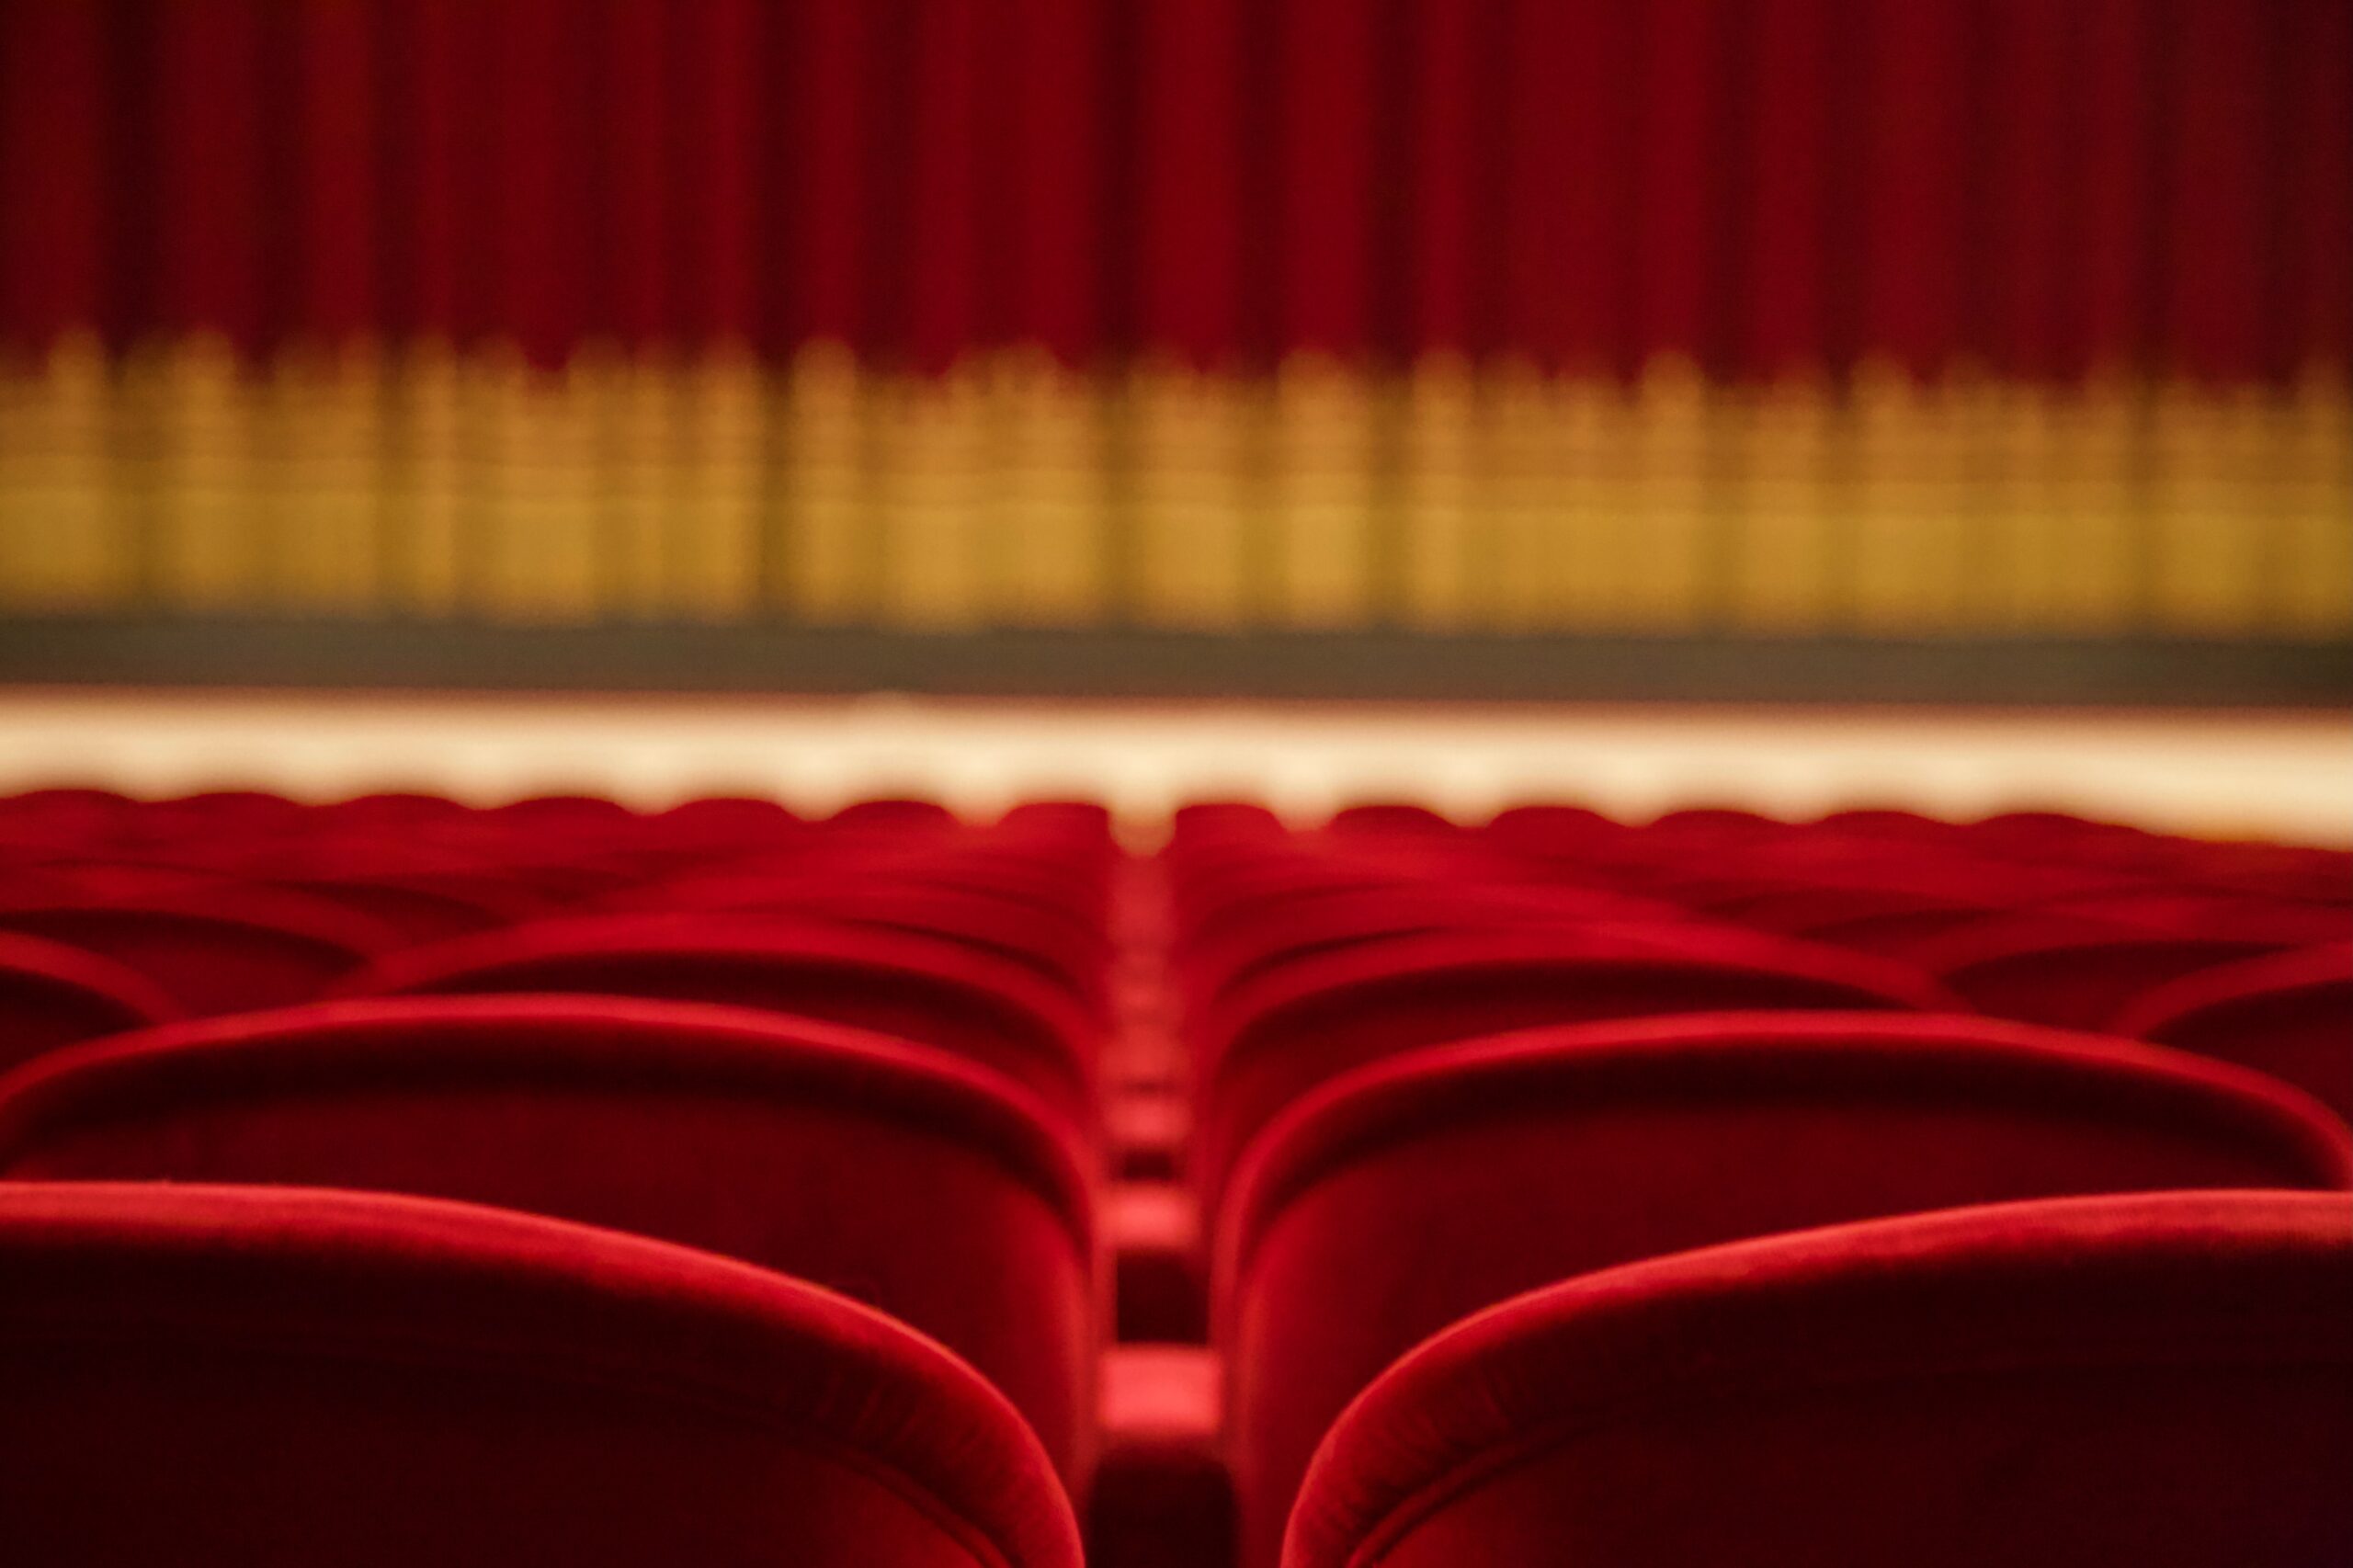 Nuovo Dpcm: possibile stretta su cinema, teatri e locali pubblici